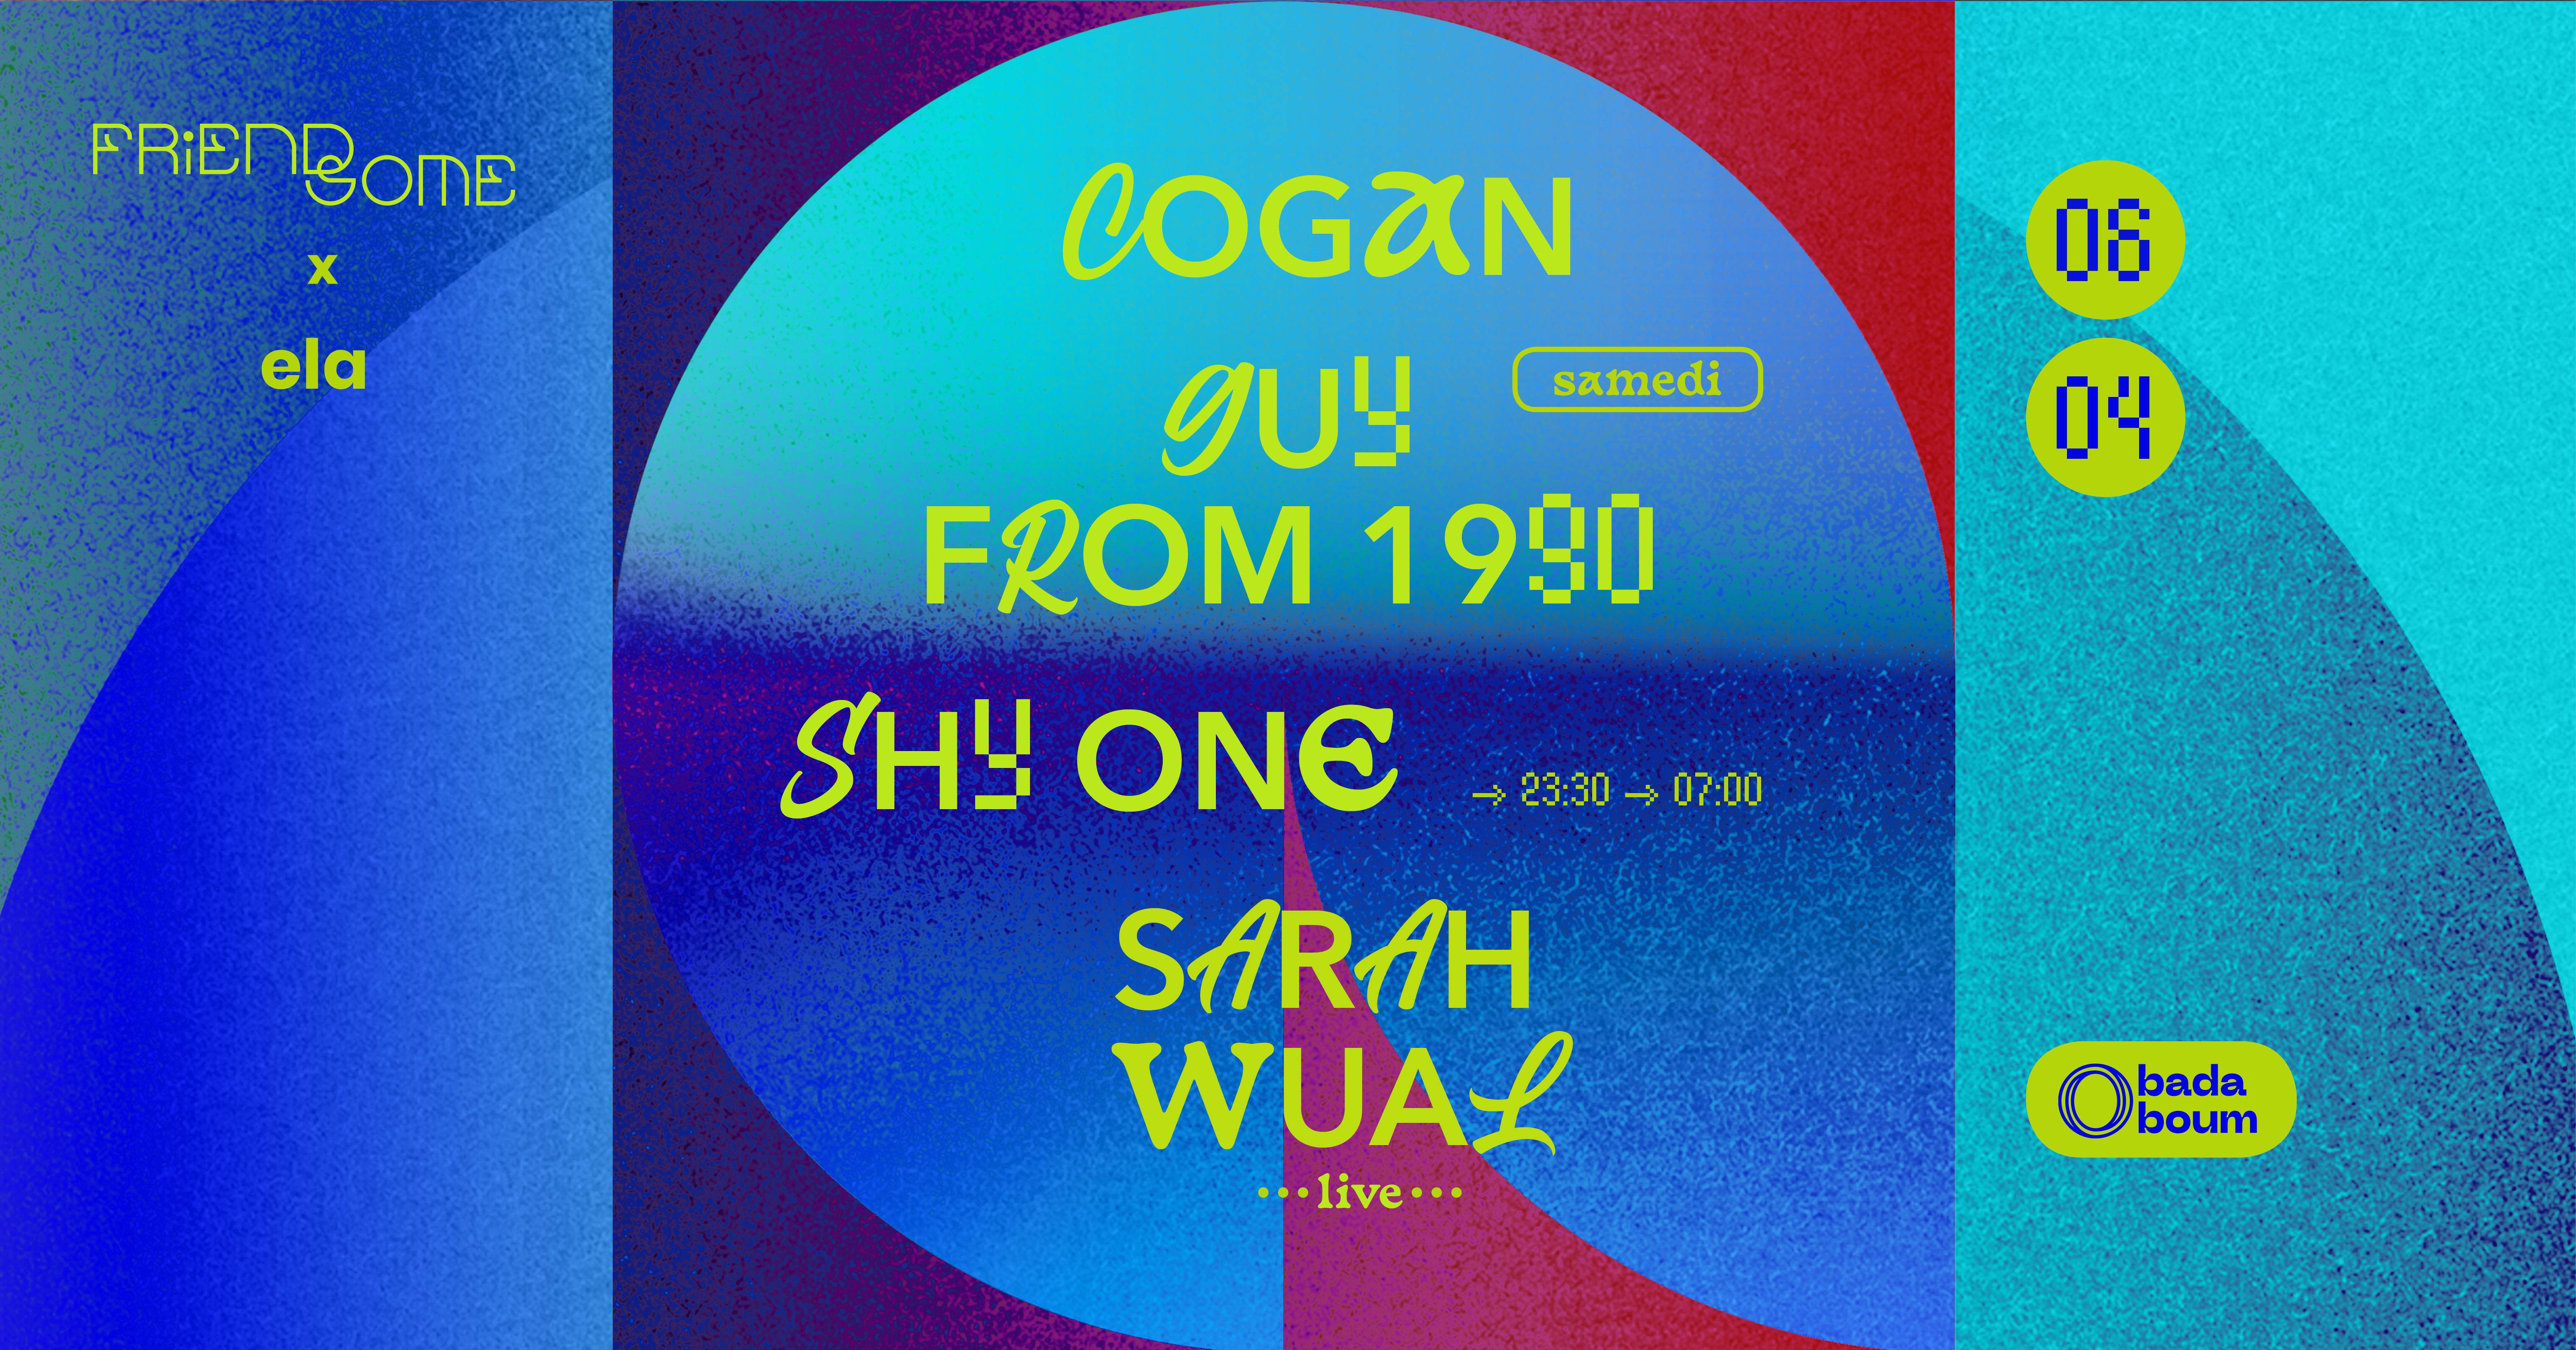 Club — Friendsome X ELA with Shy One (+) Sara Wual live (+) Cogan - フライヤー表